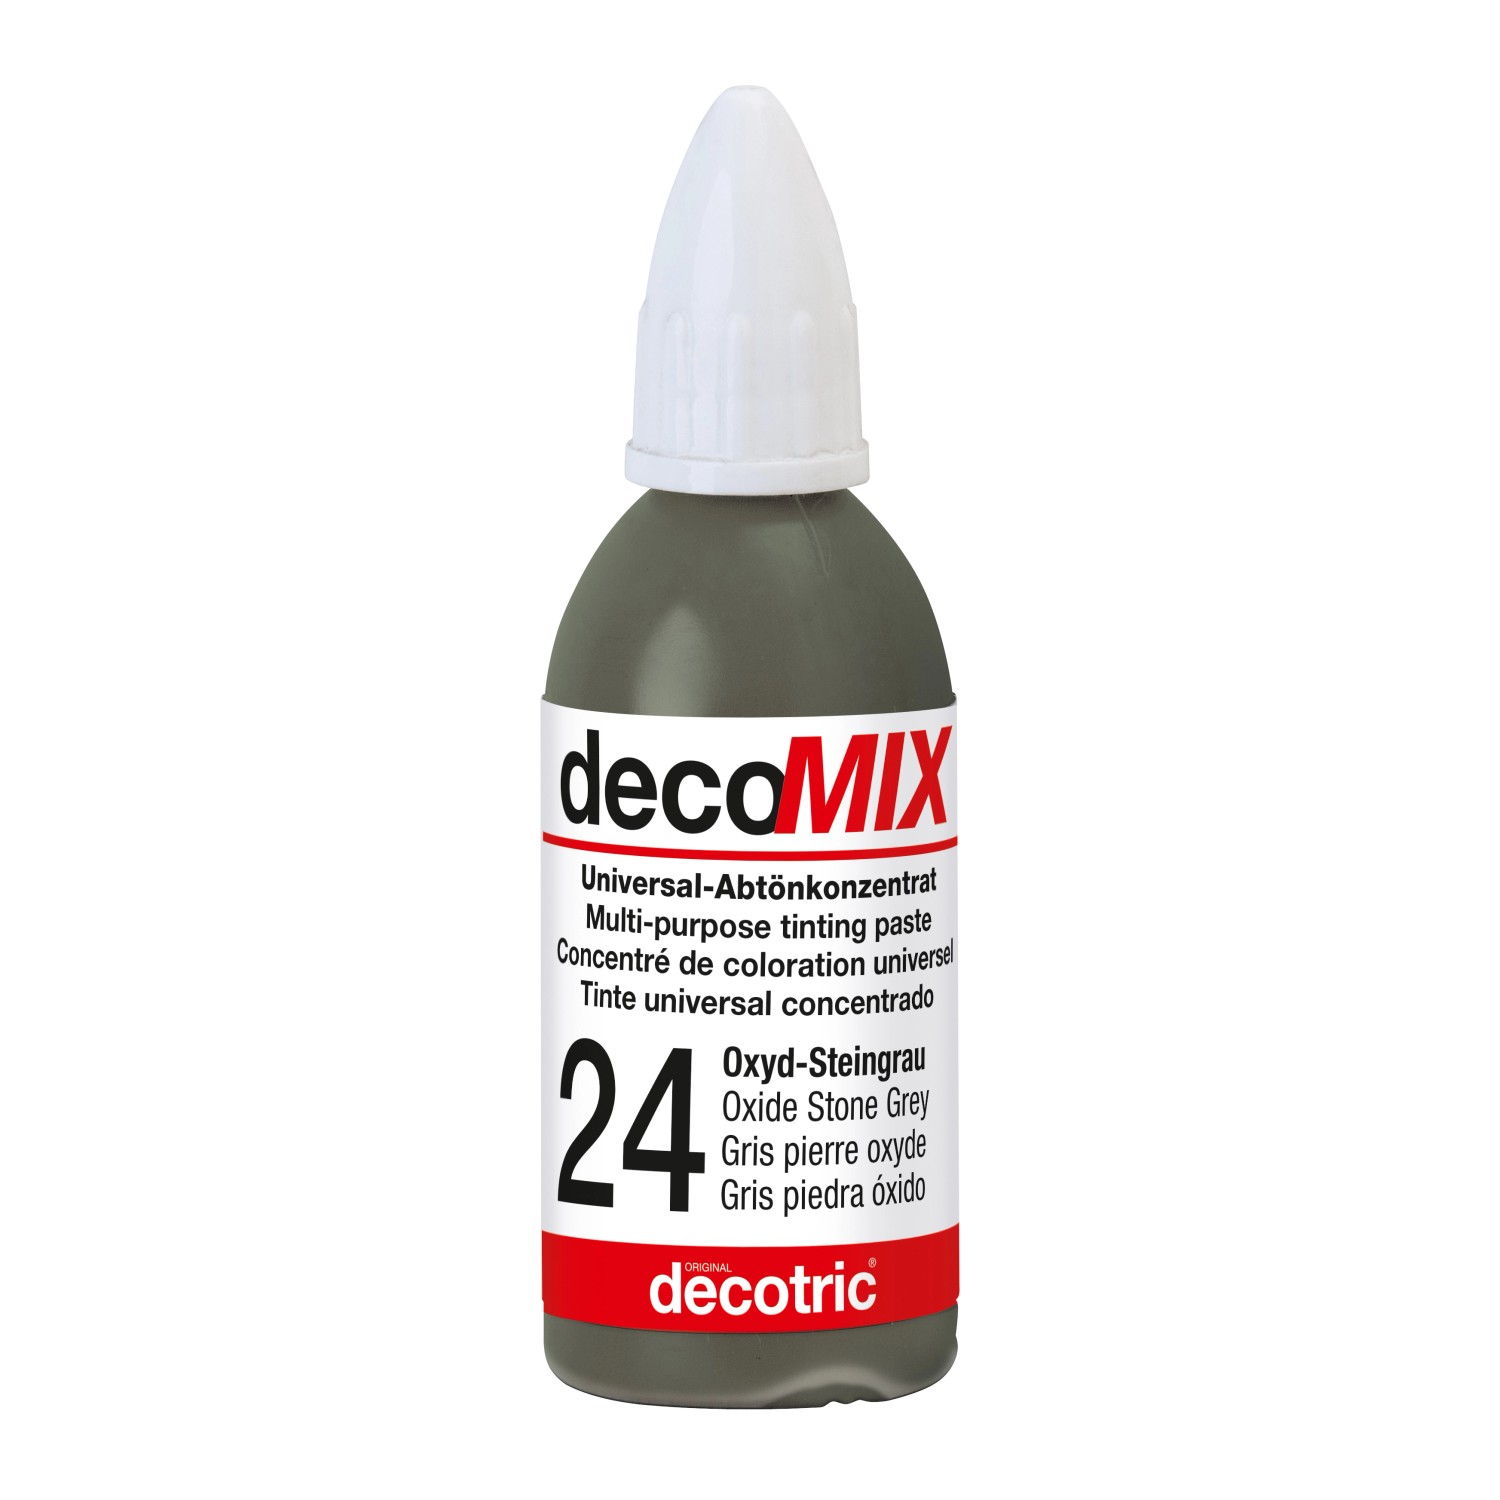 Decomix Universal-Abtönkonzentrat Oxyd-Steingrau 20 ml von decotric